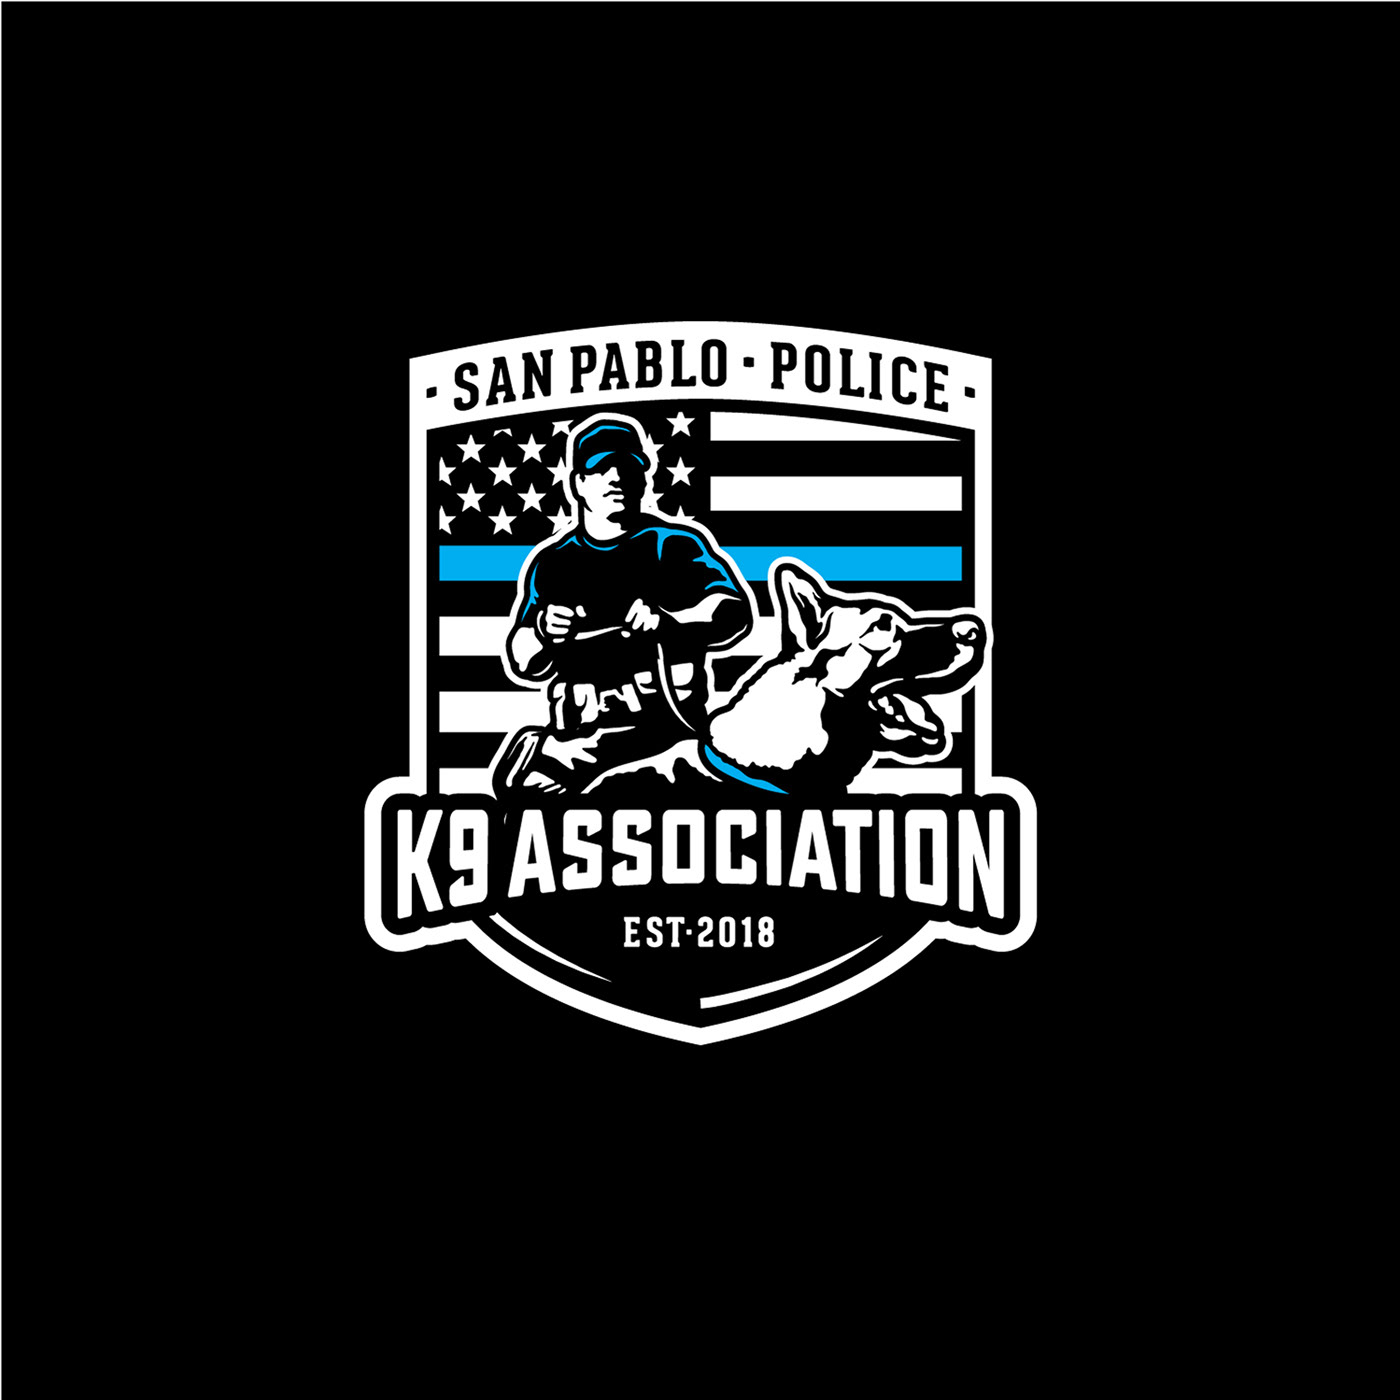 Association dog k9 law enforcement police police officer san pablo thin blue line